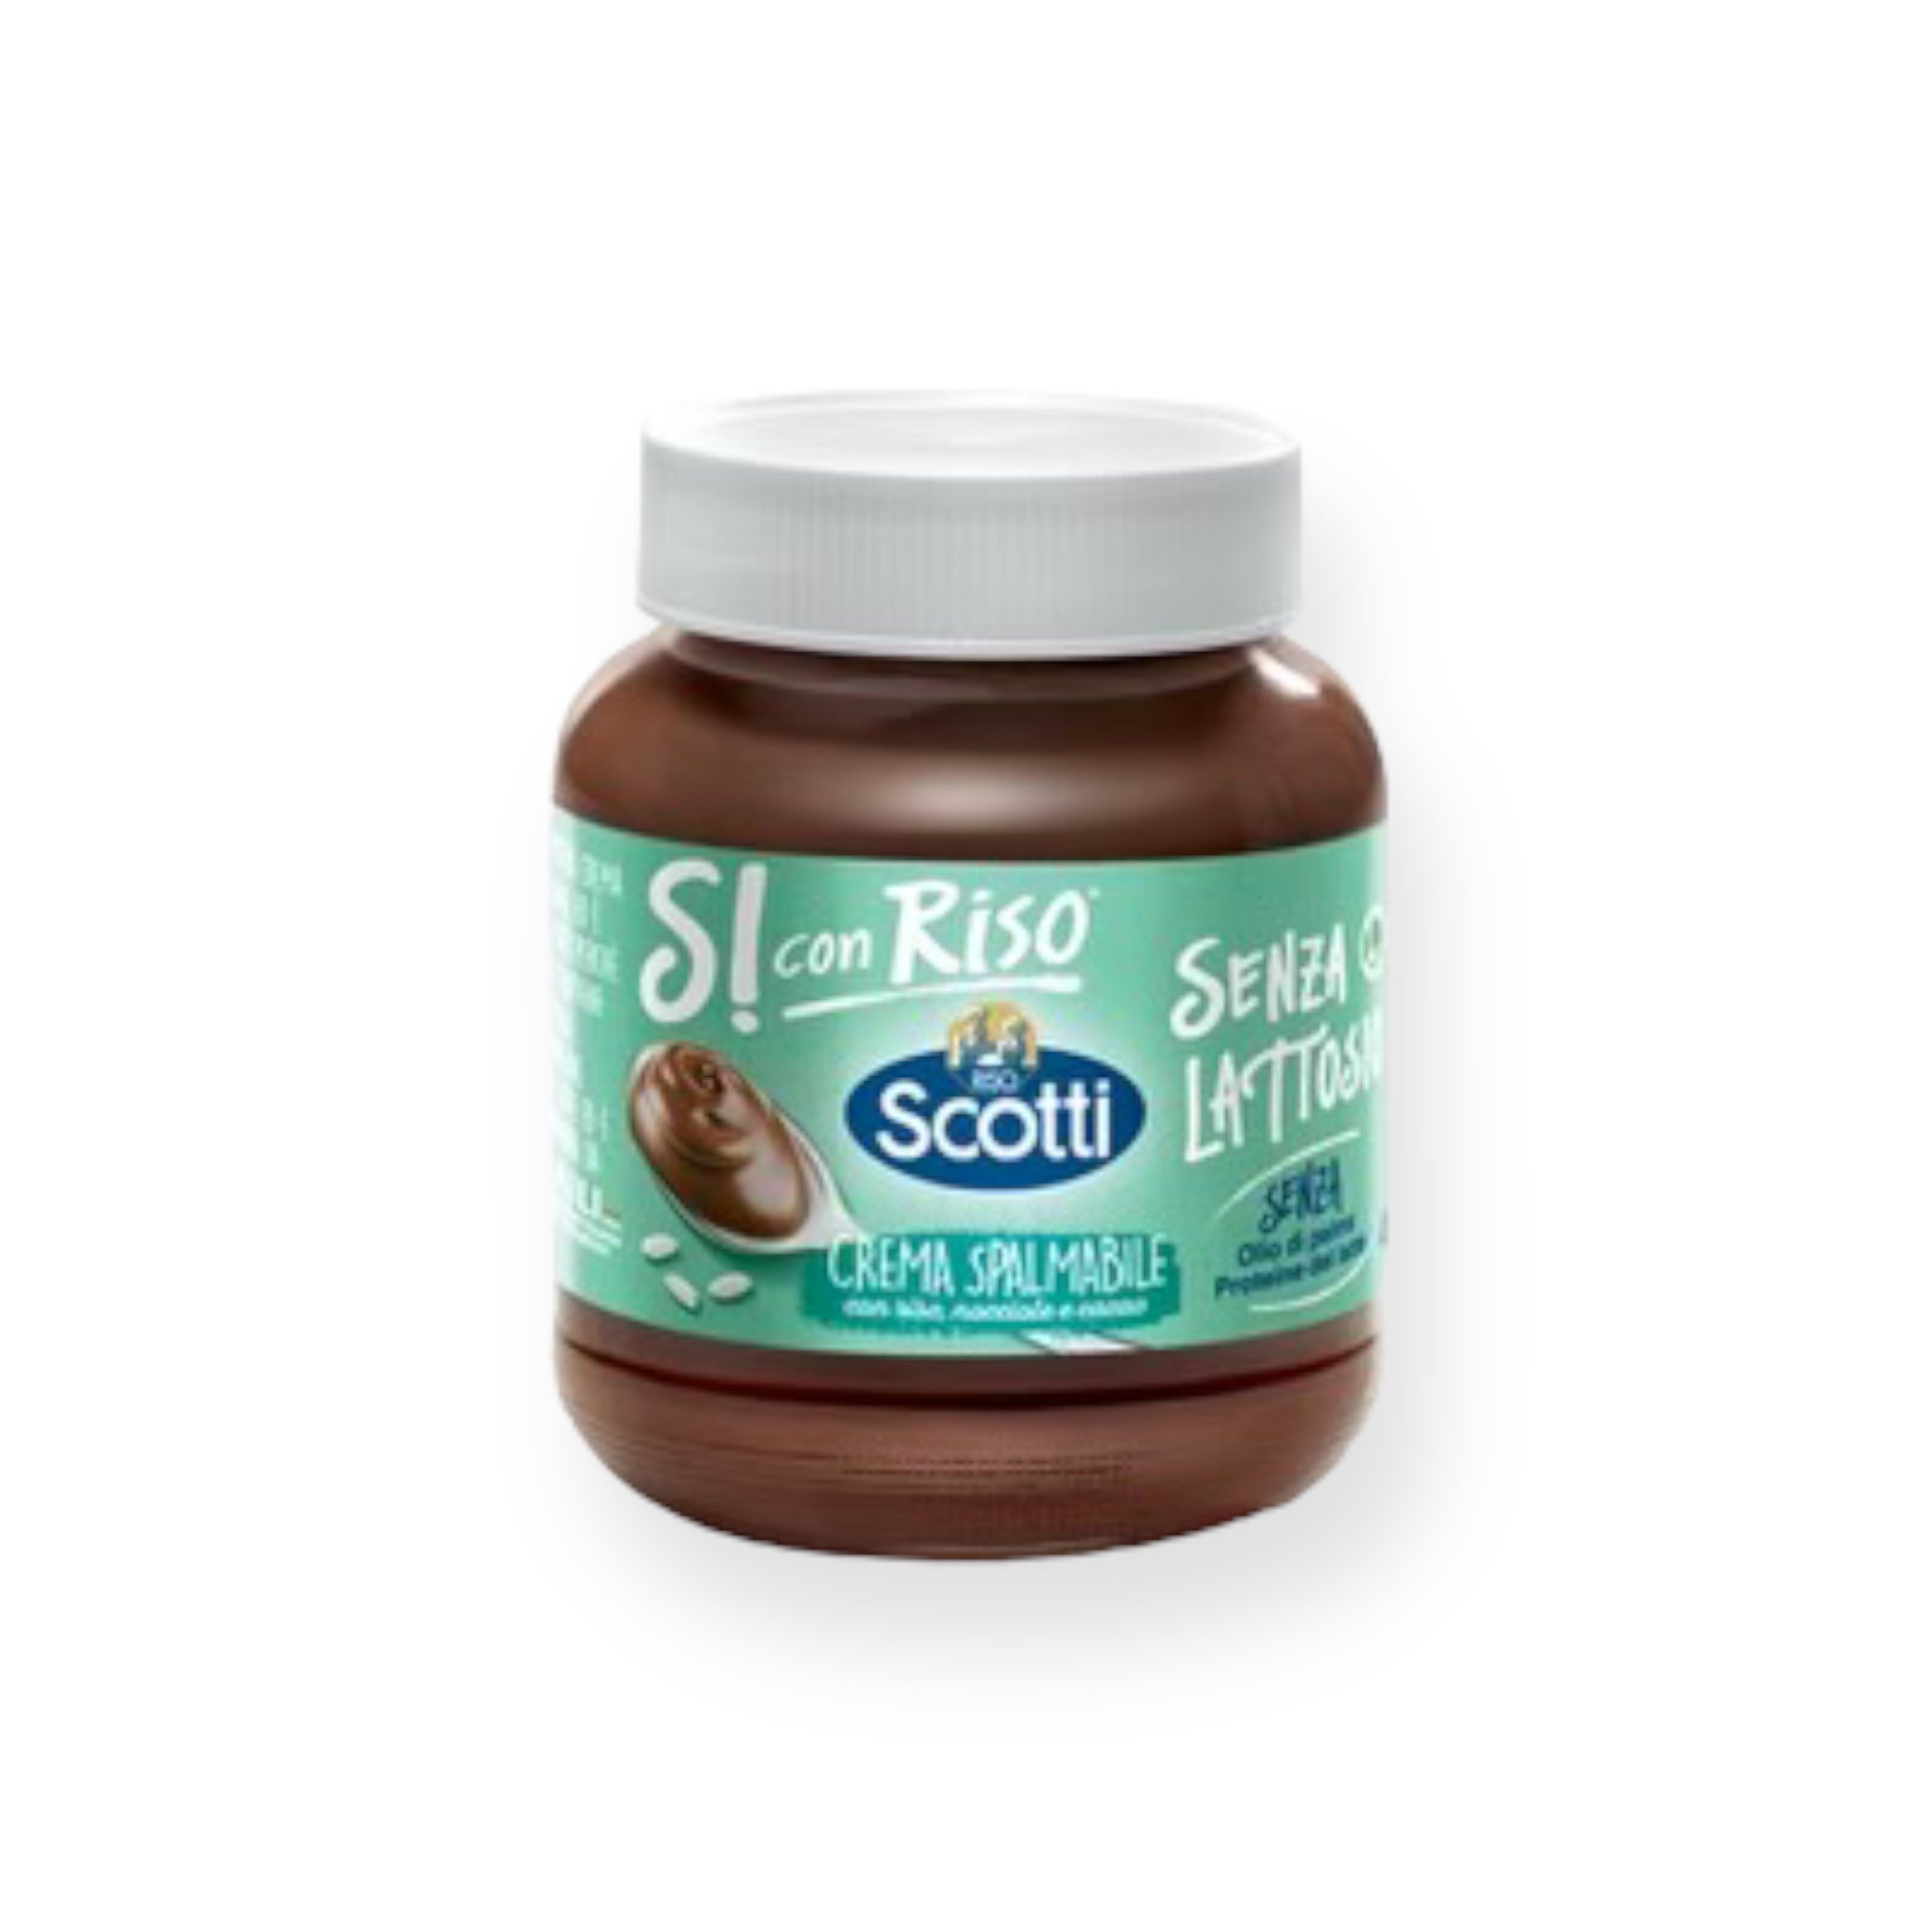 Scotti Spreadable Cream With Rice, Hazelnut & Cocoa 400g